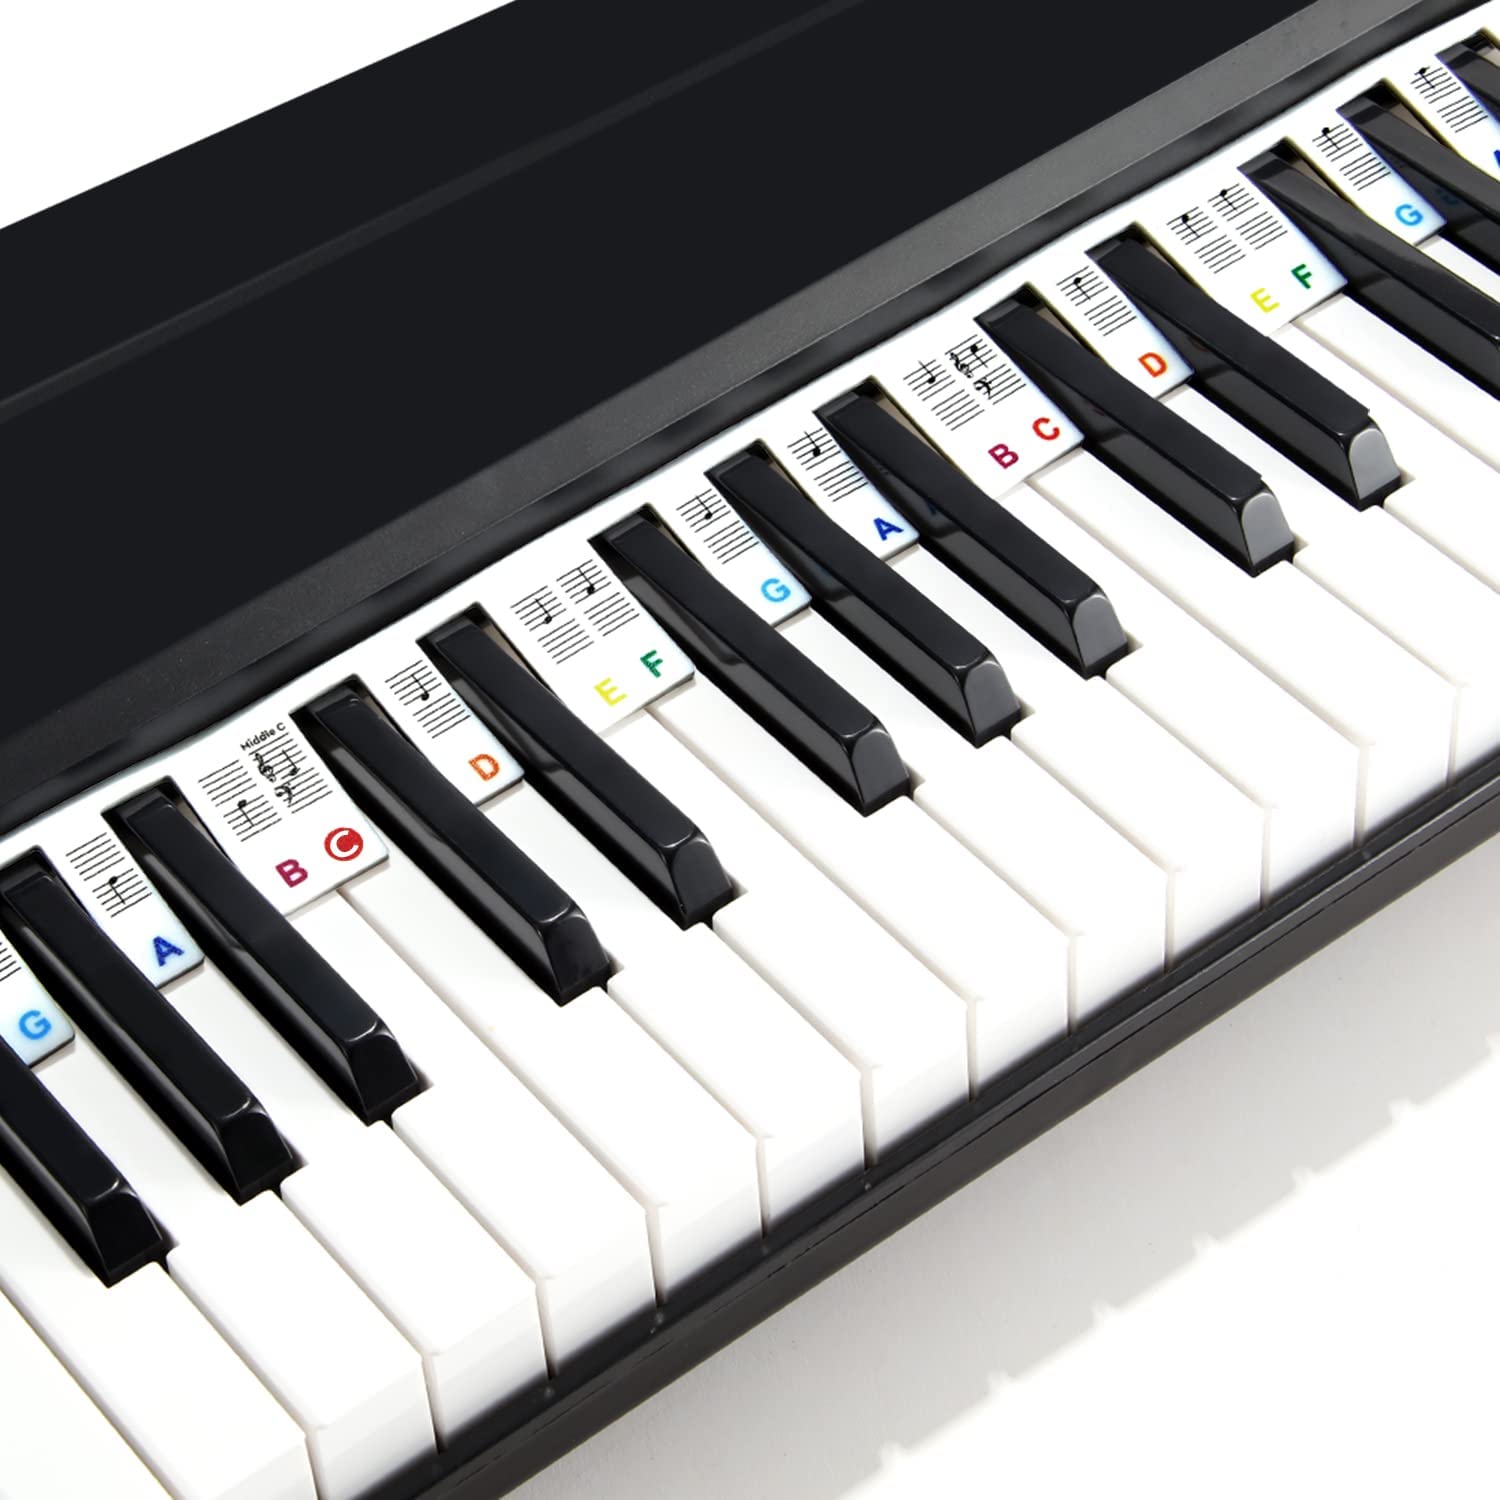 Guide des notes de piano pour débutant, étiquettes amovibles de notes de  clavier de piano pour l'apprentissage, taille réelle de 88 touches, en  silicone, pas besoin d'autocollants, réutilisable